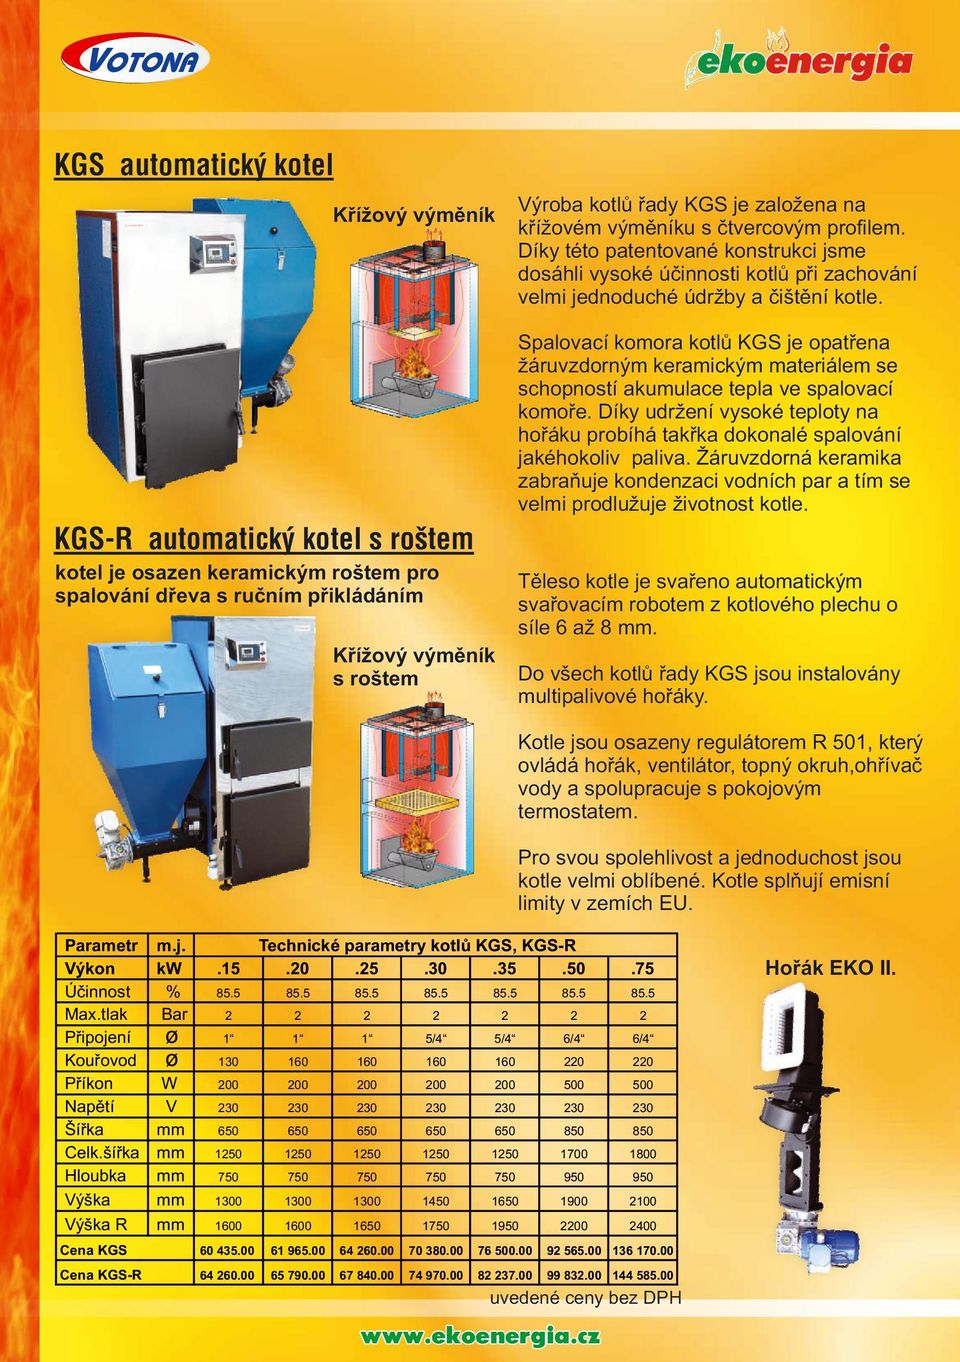 Spalovací komora kotlů KGS je opatřena žáruvzdorným keramickým materiálem se schopností akumulace tepla ve spalovací komoře.